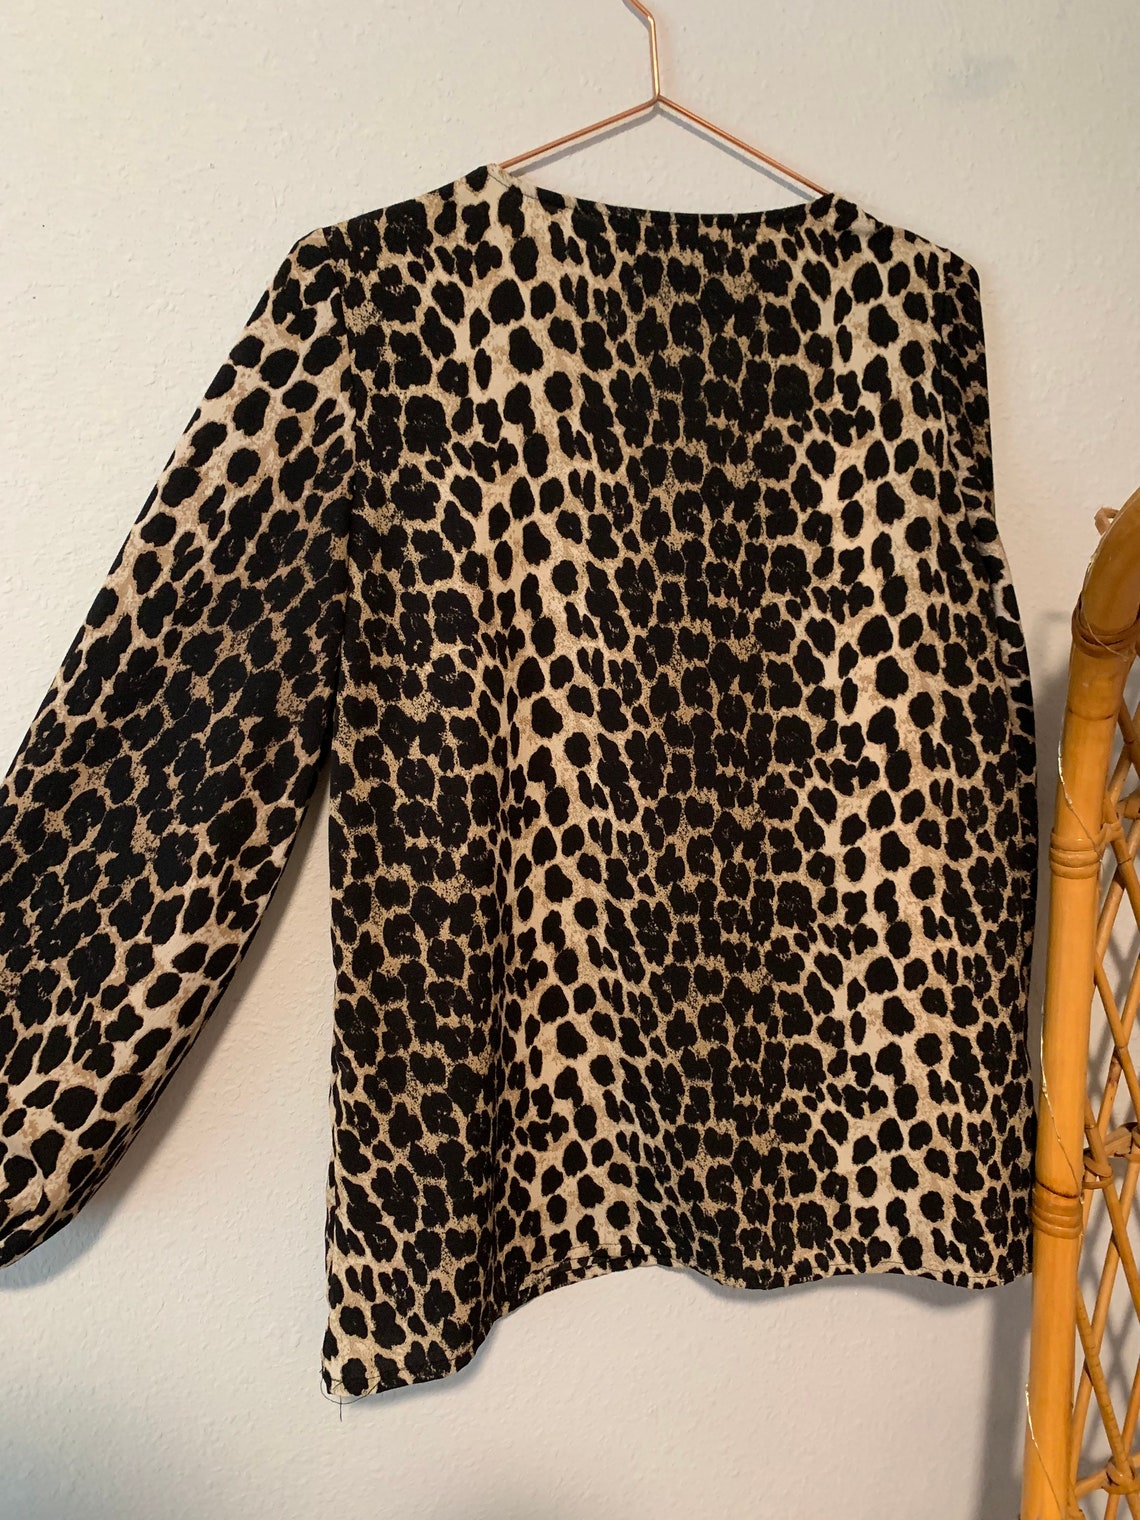 Medium Cheetah Animal Blouse Top Shirt Preloved Vintage | Etsy